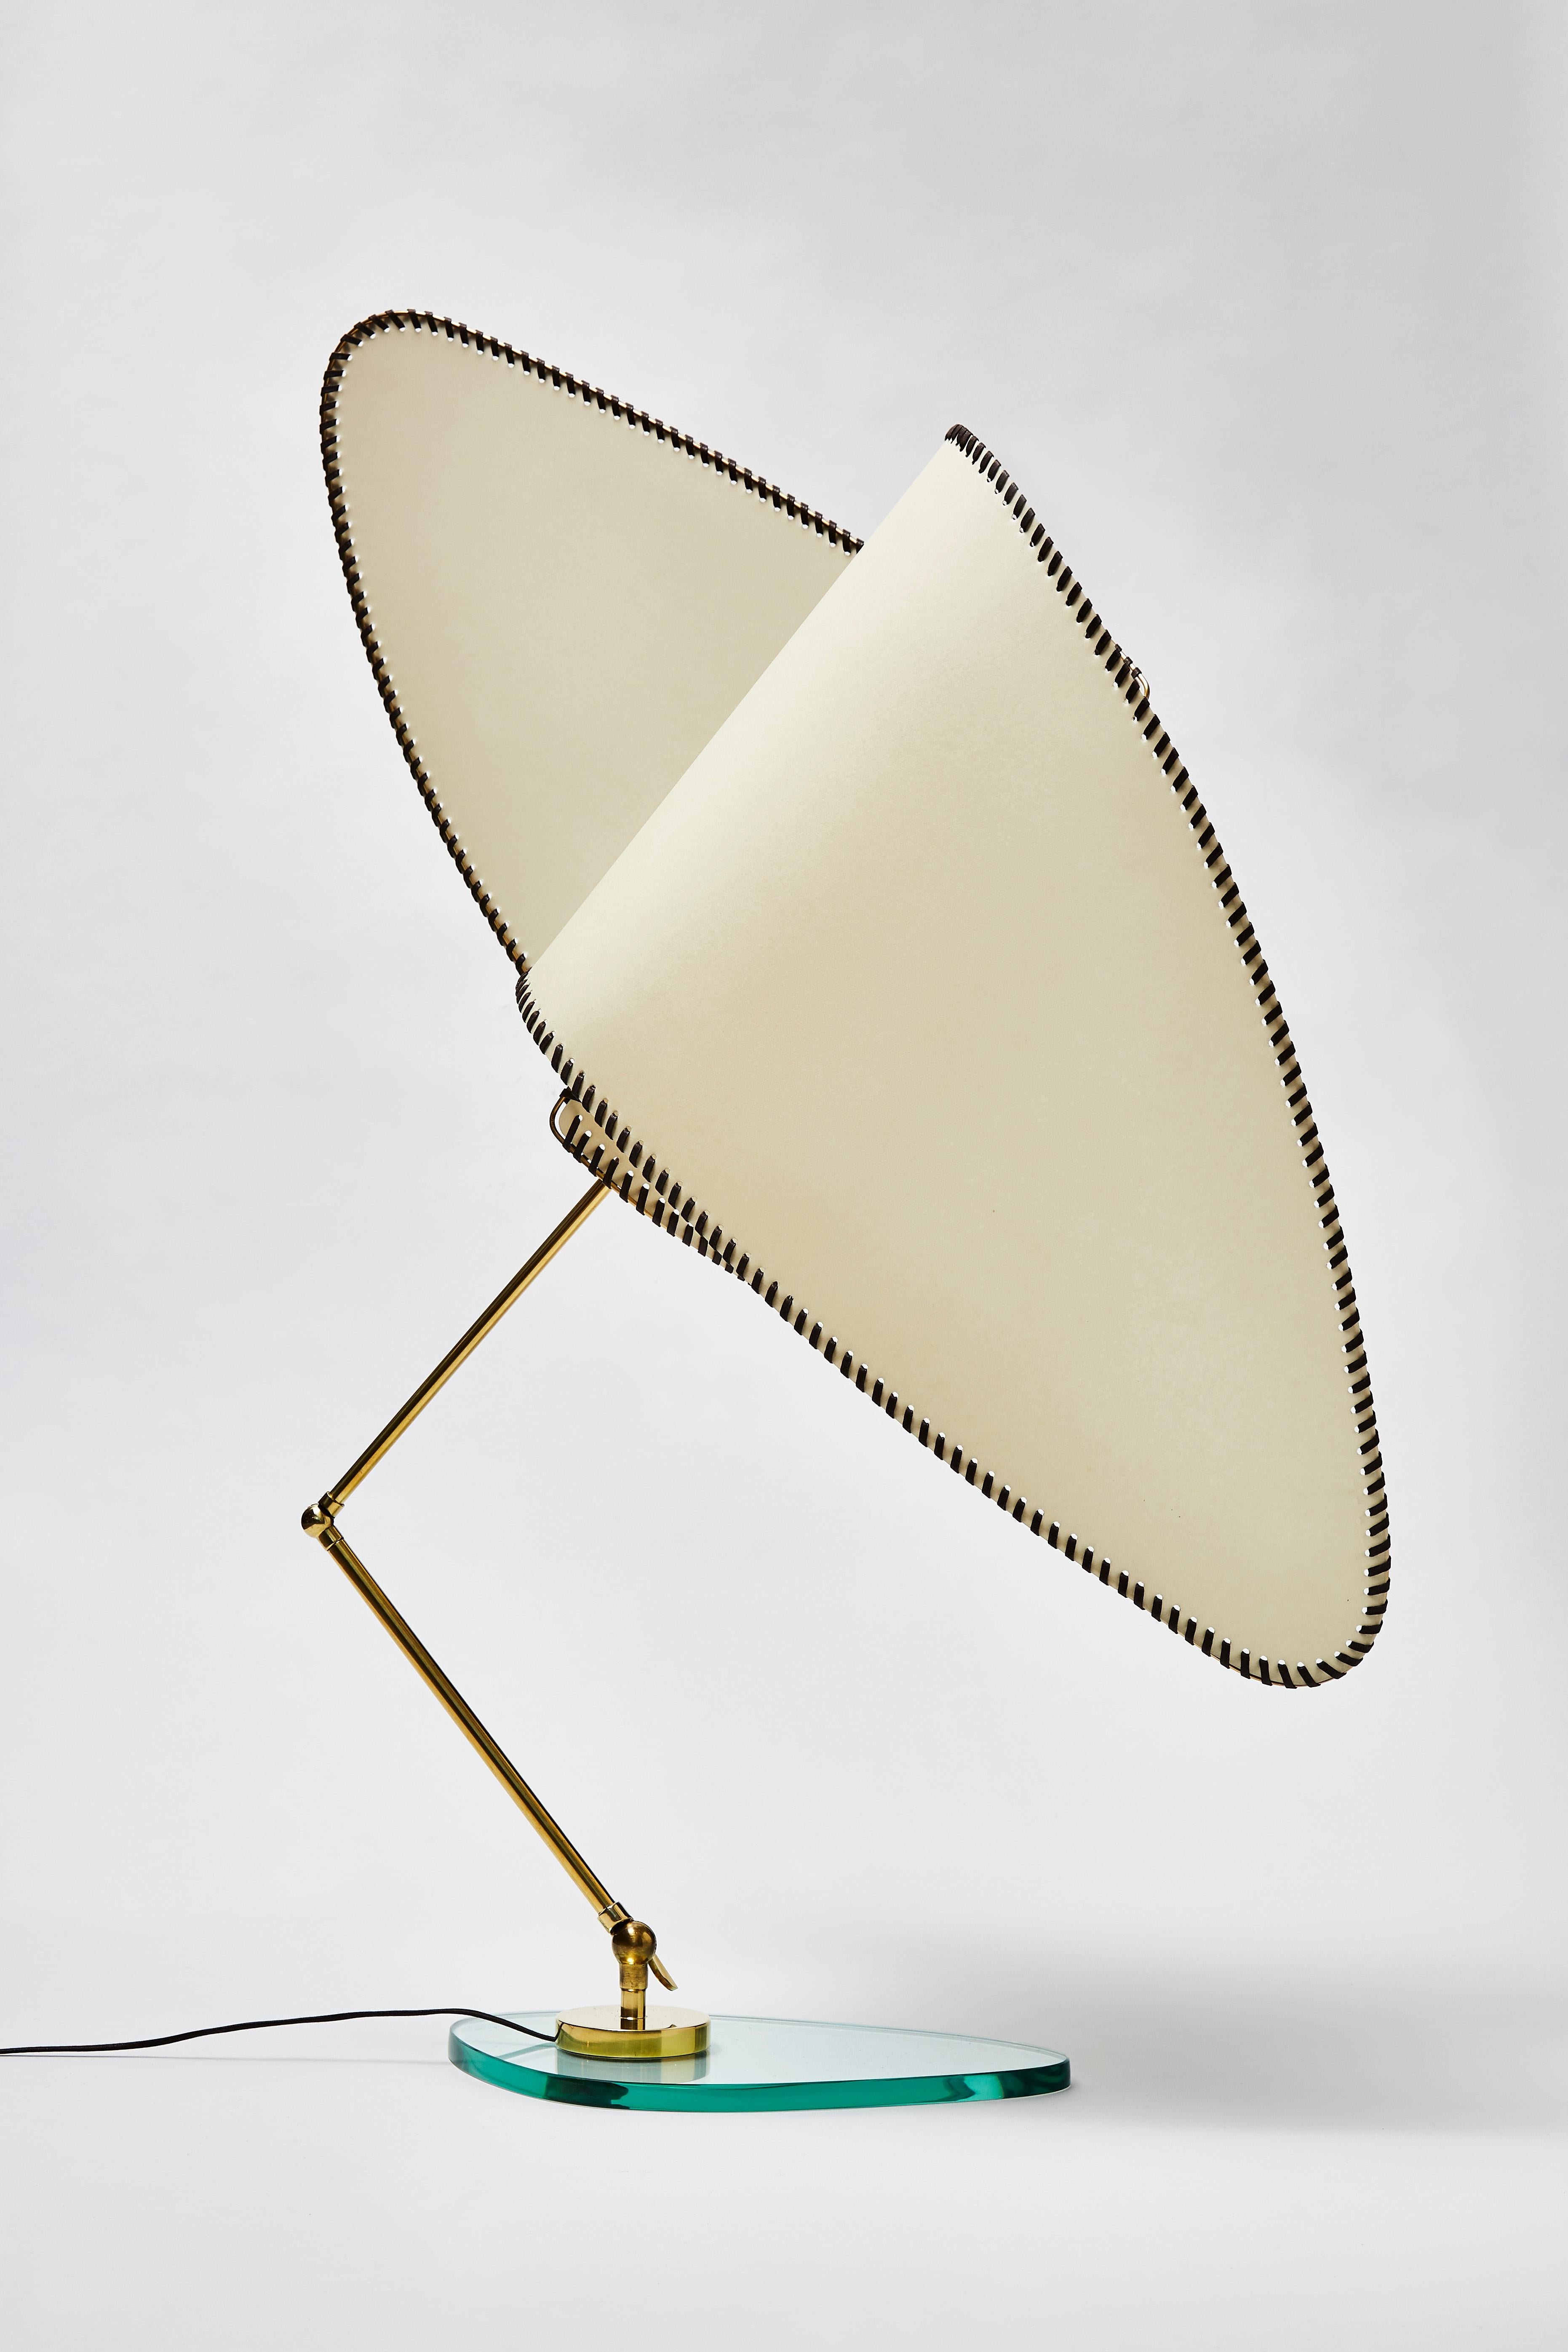 Ventola Tischleuchte des Künstlers Diego Mardegan exklusiv für Glustin Luminaires.

Wunderschöner Zwei-Wege-Schirm aus einer Messingstruktur, Parcheminpapier und gewachstem Stoff, der von einem gelenkigen Messingarm gehalten wird, der an einem